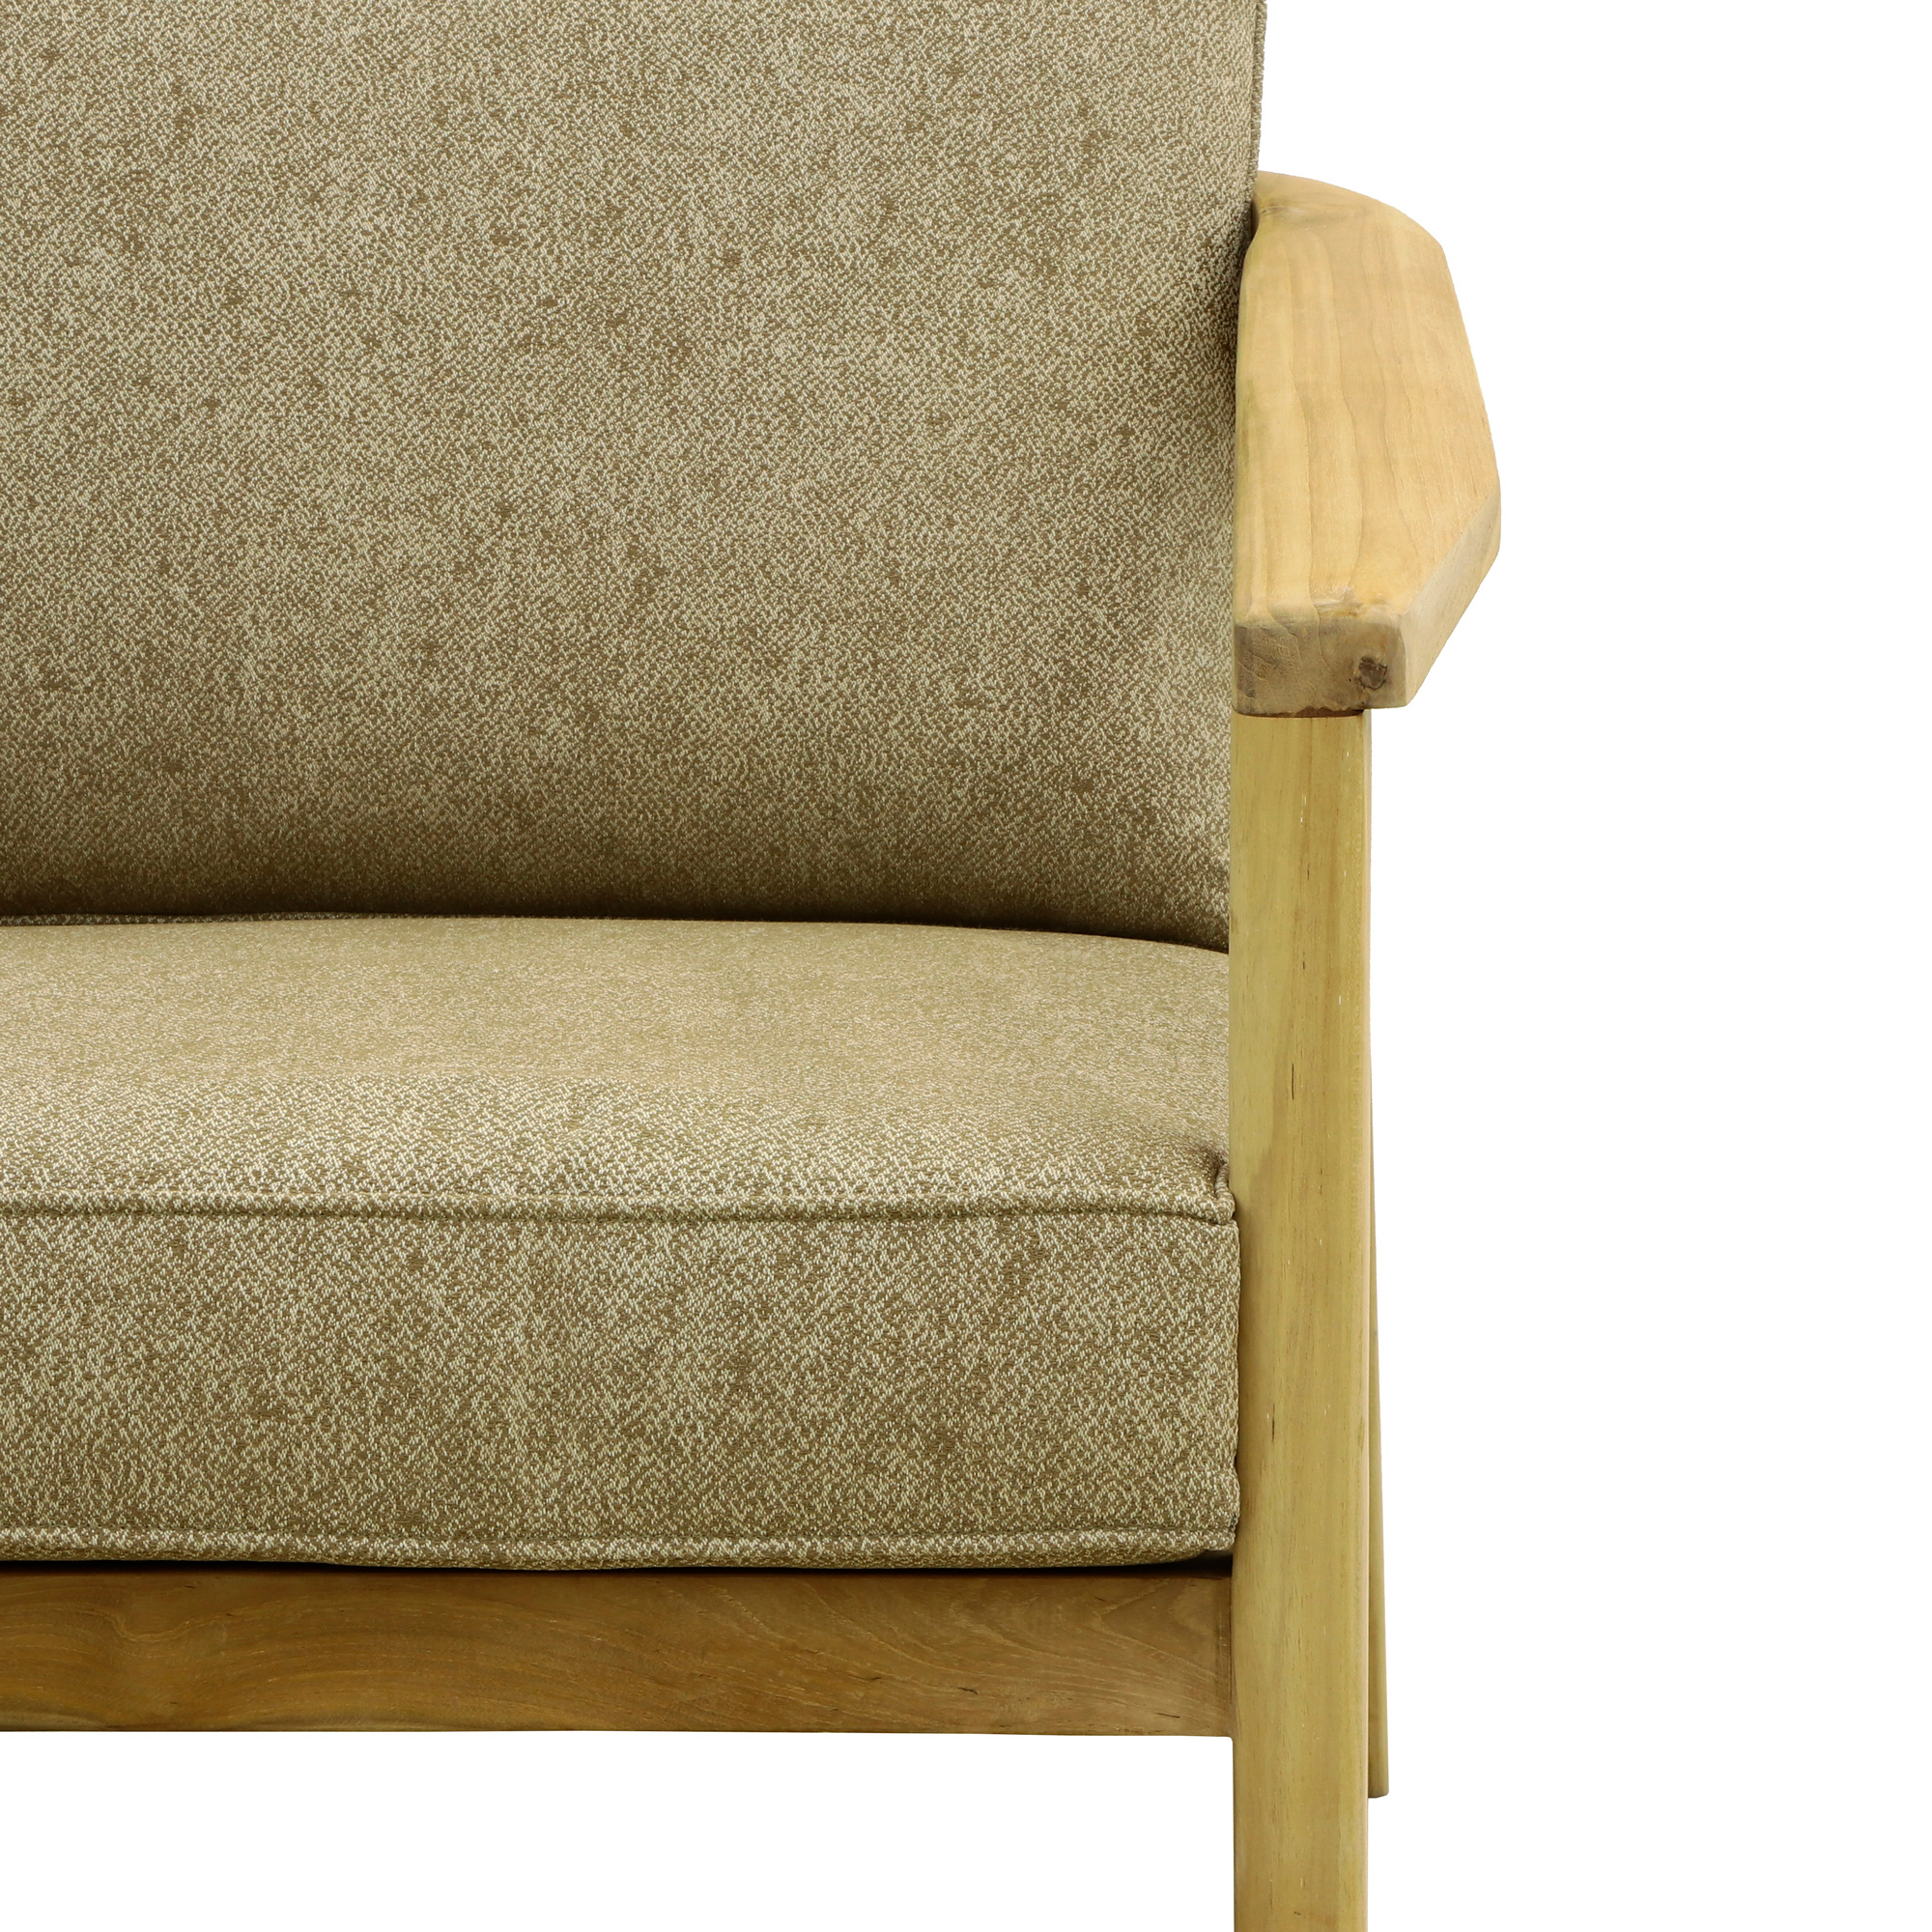 Комплект мебели Jepara Porto Cervo l 6 предметов, цвет коричневый, размер 82х210х85 - фото 4